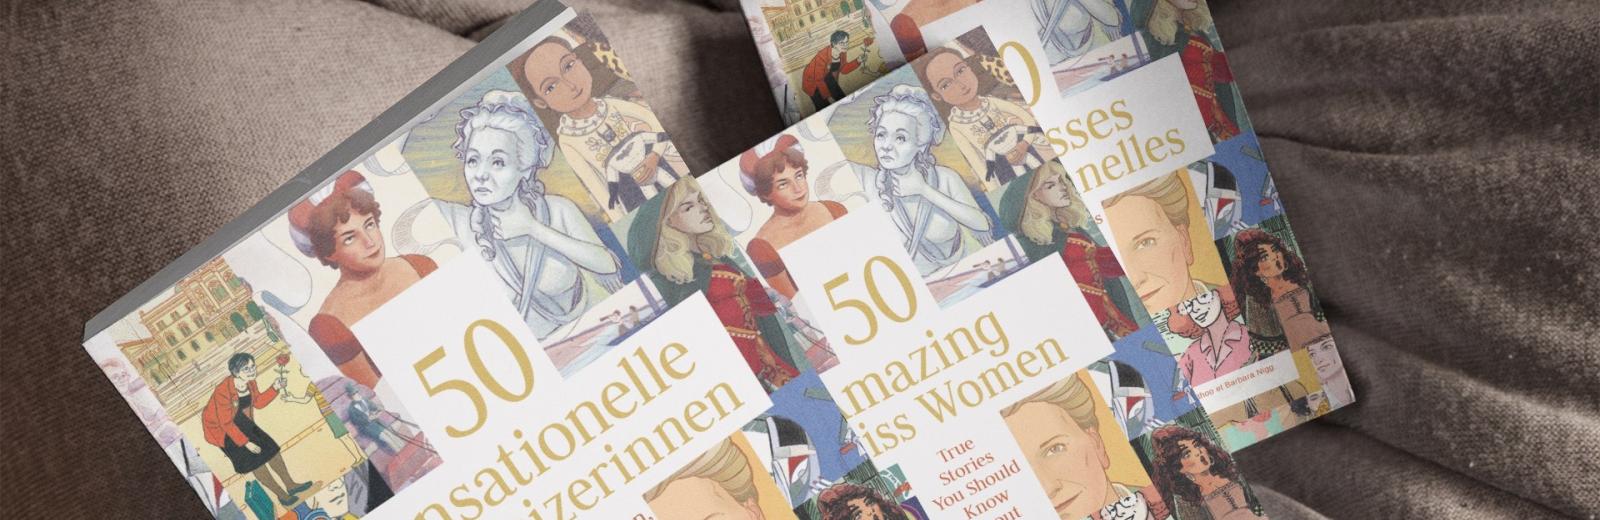 La tapa del libro sobre 50 mujeres suizas